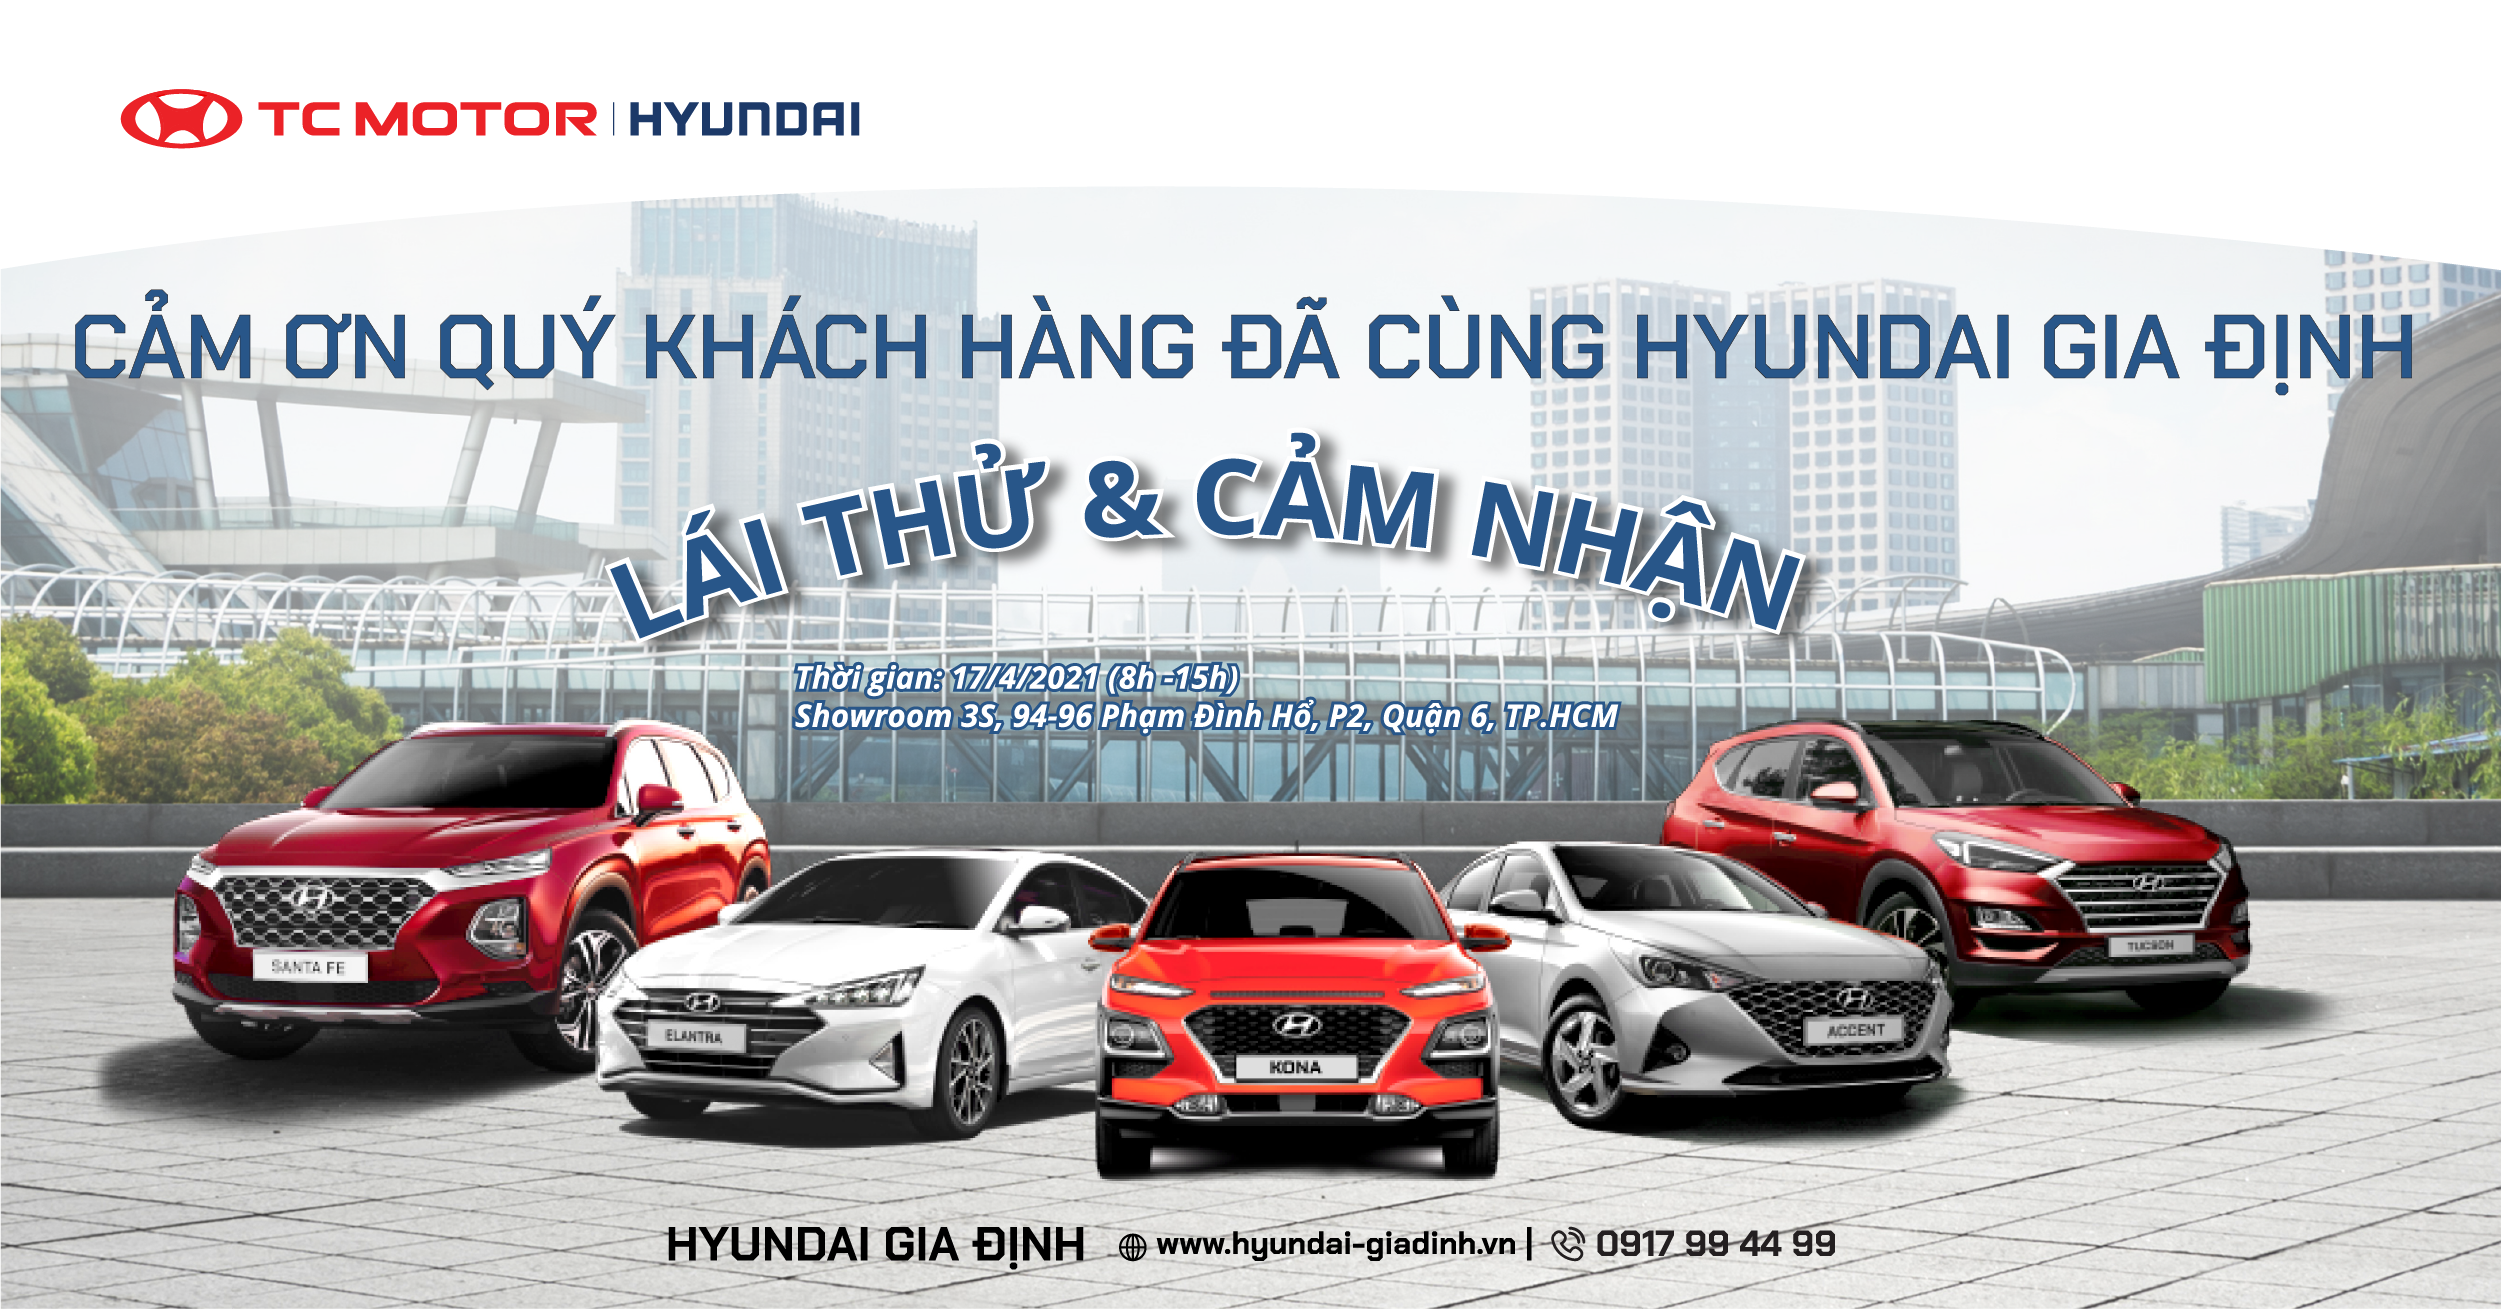 Hyundai Gia Định